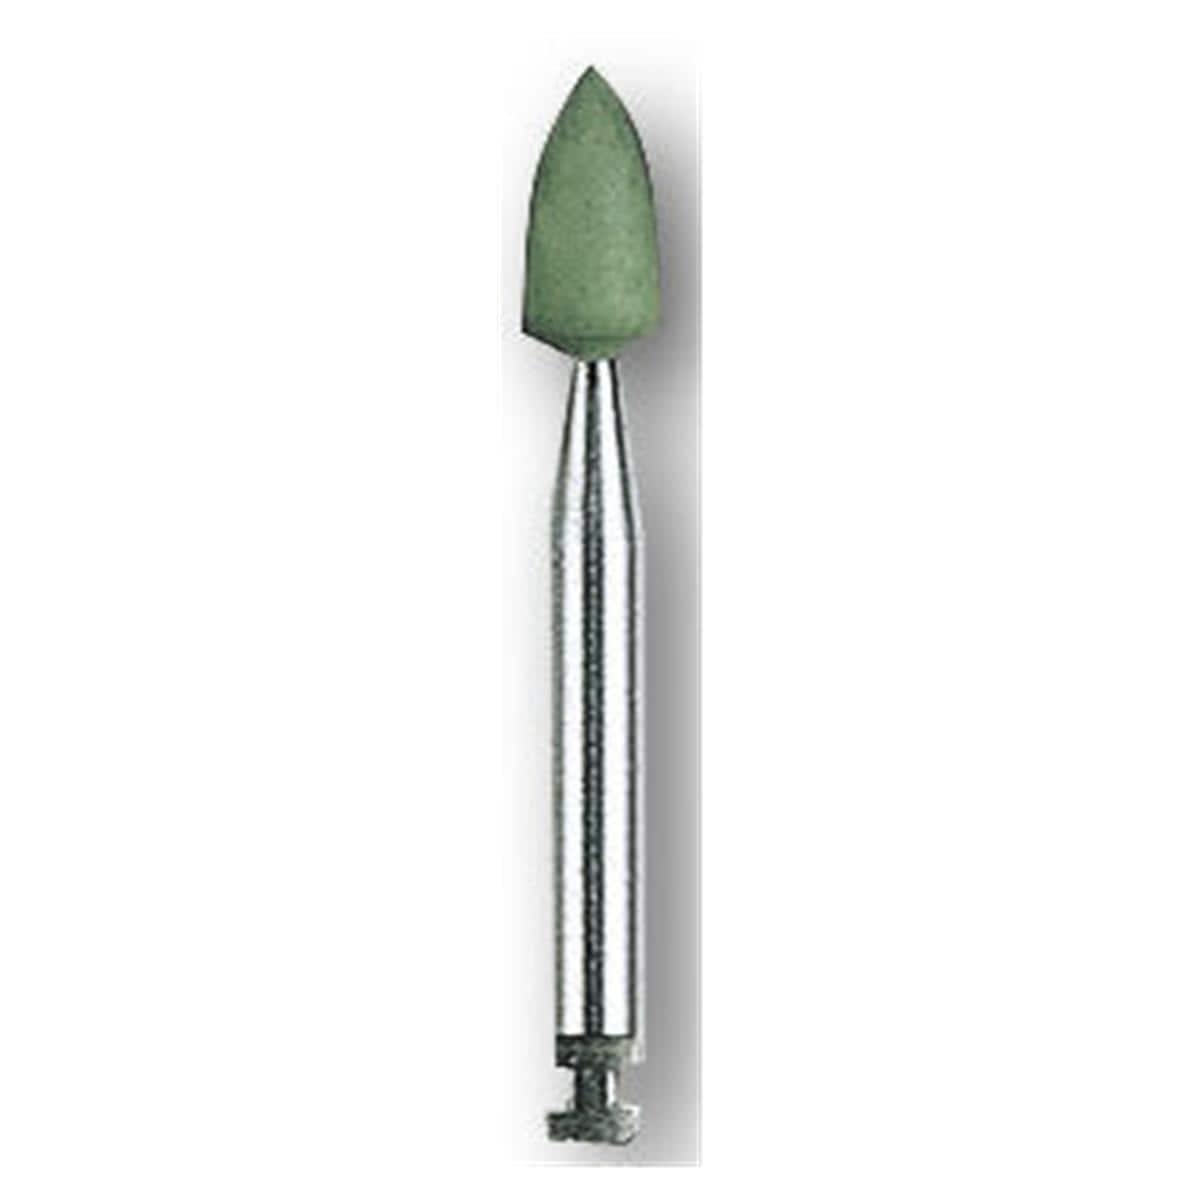 HS-Amalgam Polierer - Nachfüllpackung - Spitze grün, 0654, Polierkopf: 3 x 6 mm, Packung 12 Stück